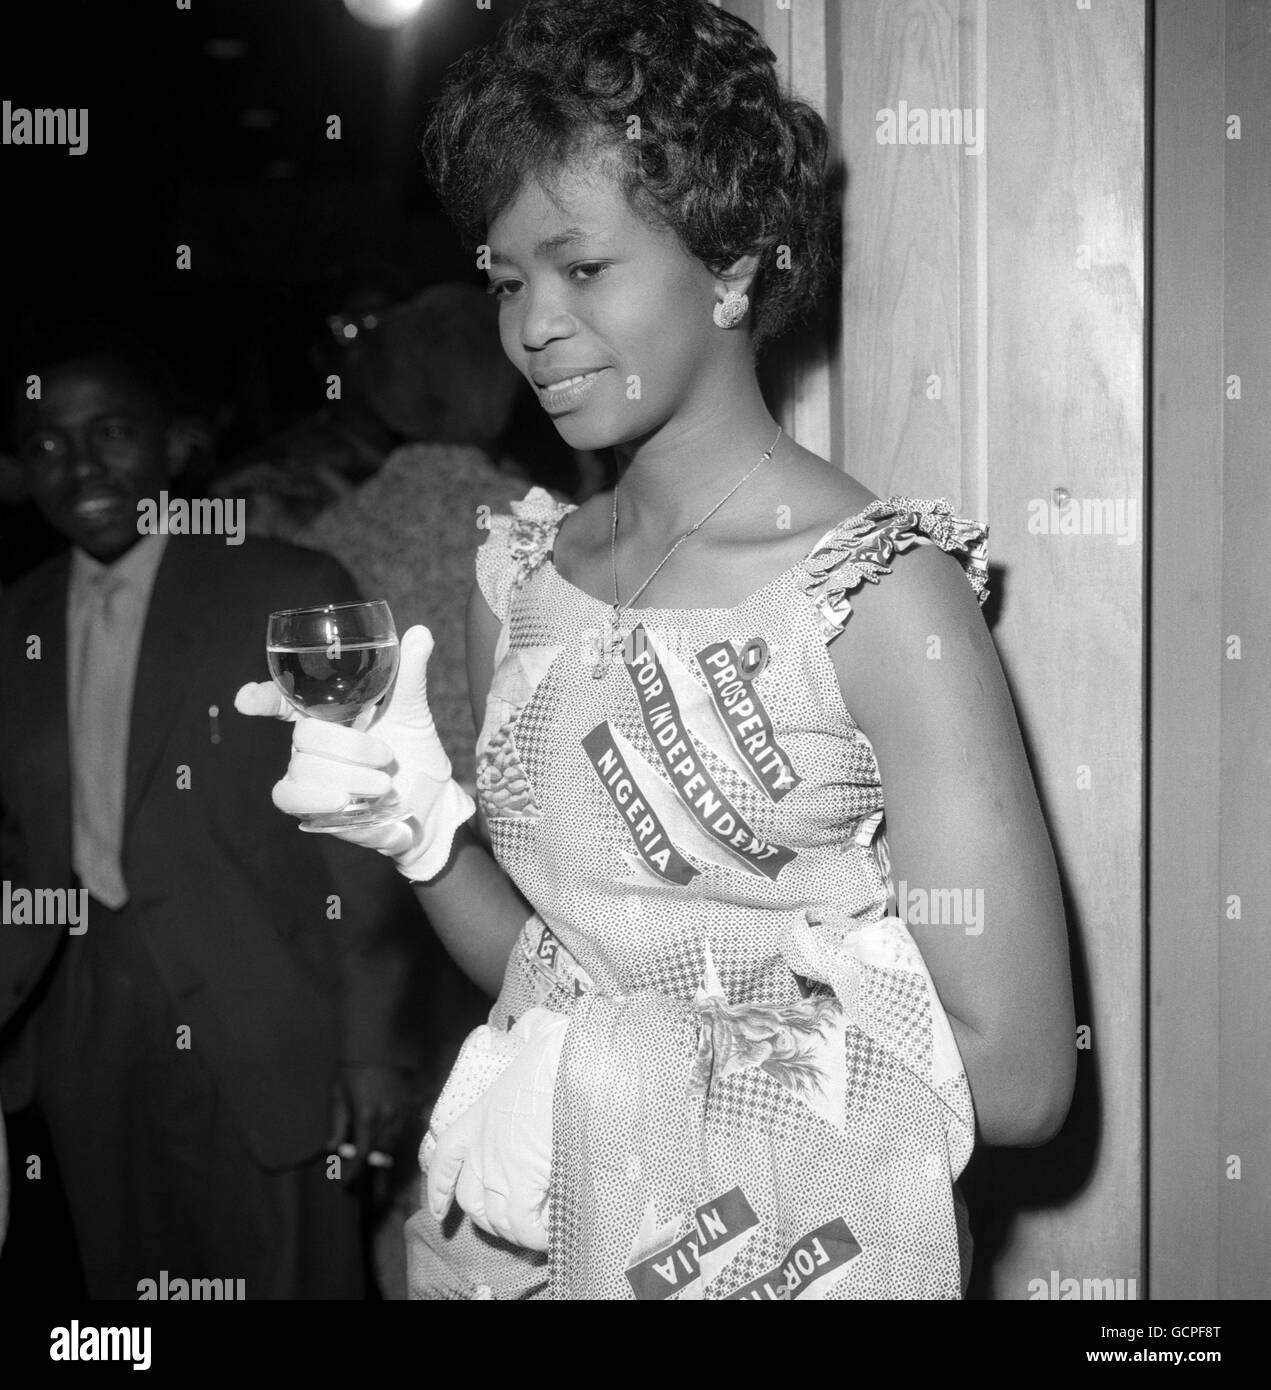 Grace Eromostele portant une robe portant le slogan « Prosperity for Independent Nigeria » au Royal Festival Hall, Londres. De nombreux Nigérians ont assisté aux célébrations de l'indépendance de leur pays, qui ont lieu le 1er octobre 1960. Banque D'Images